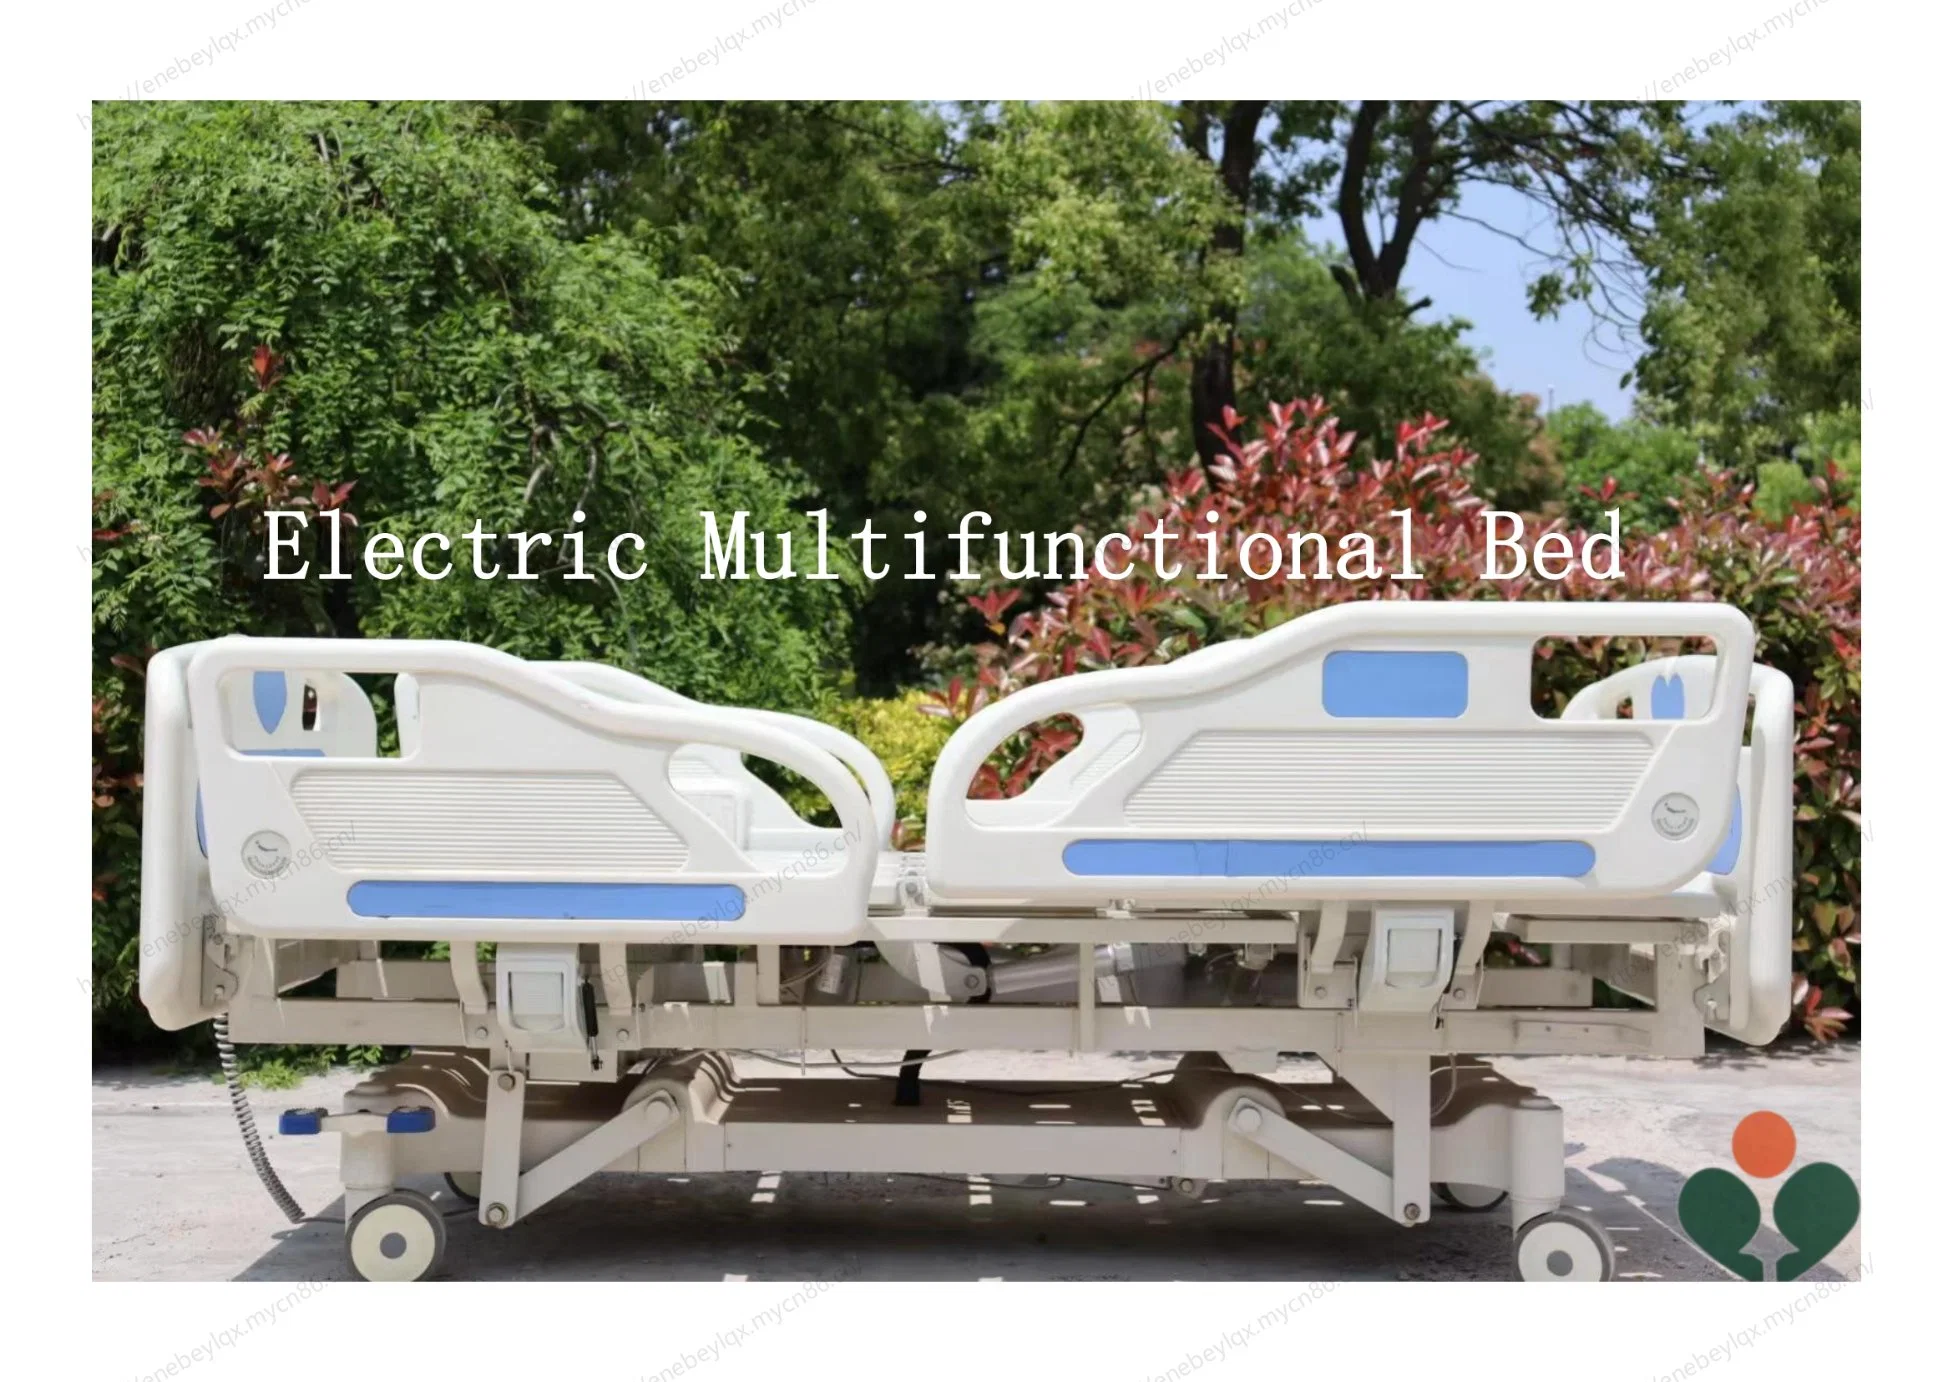 Lit de soins infirmiers électrique multifonctionnel médical pour des soins complets